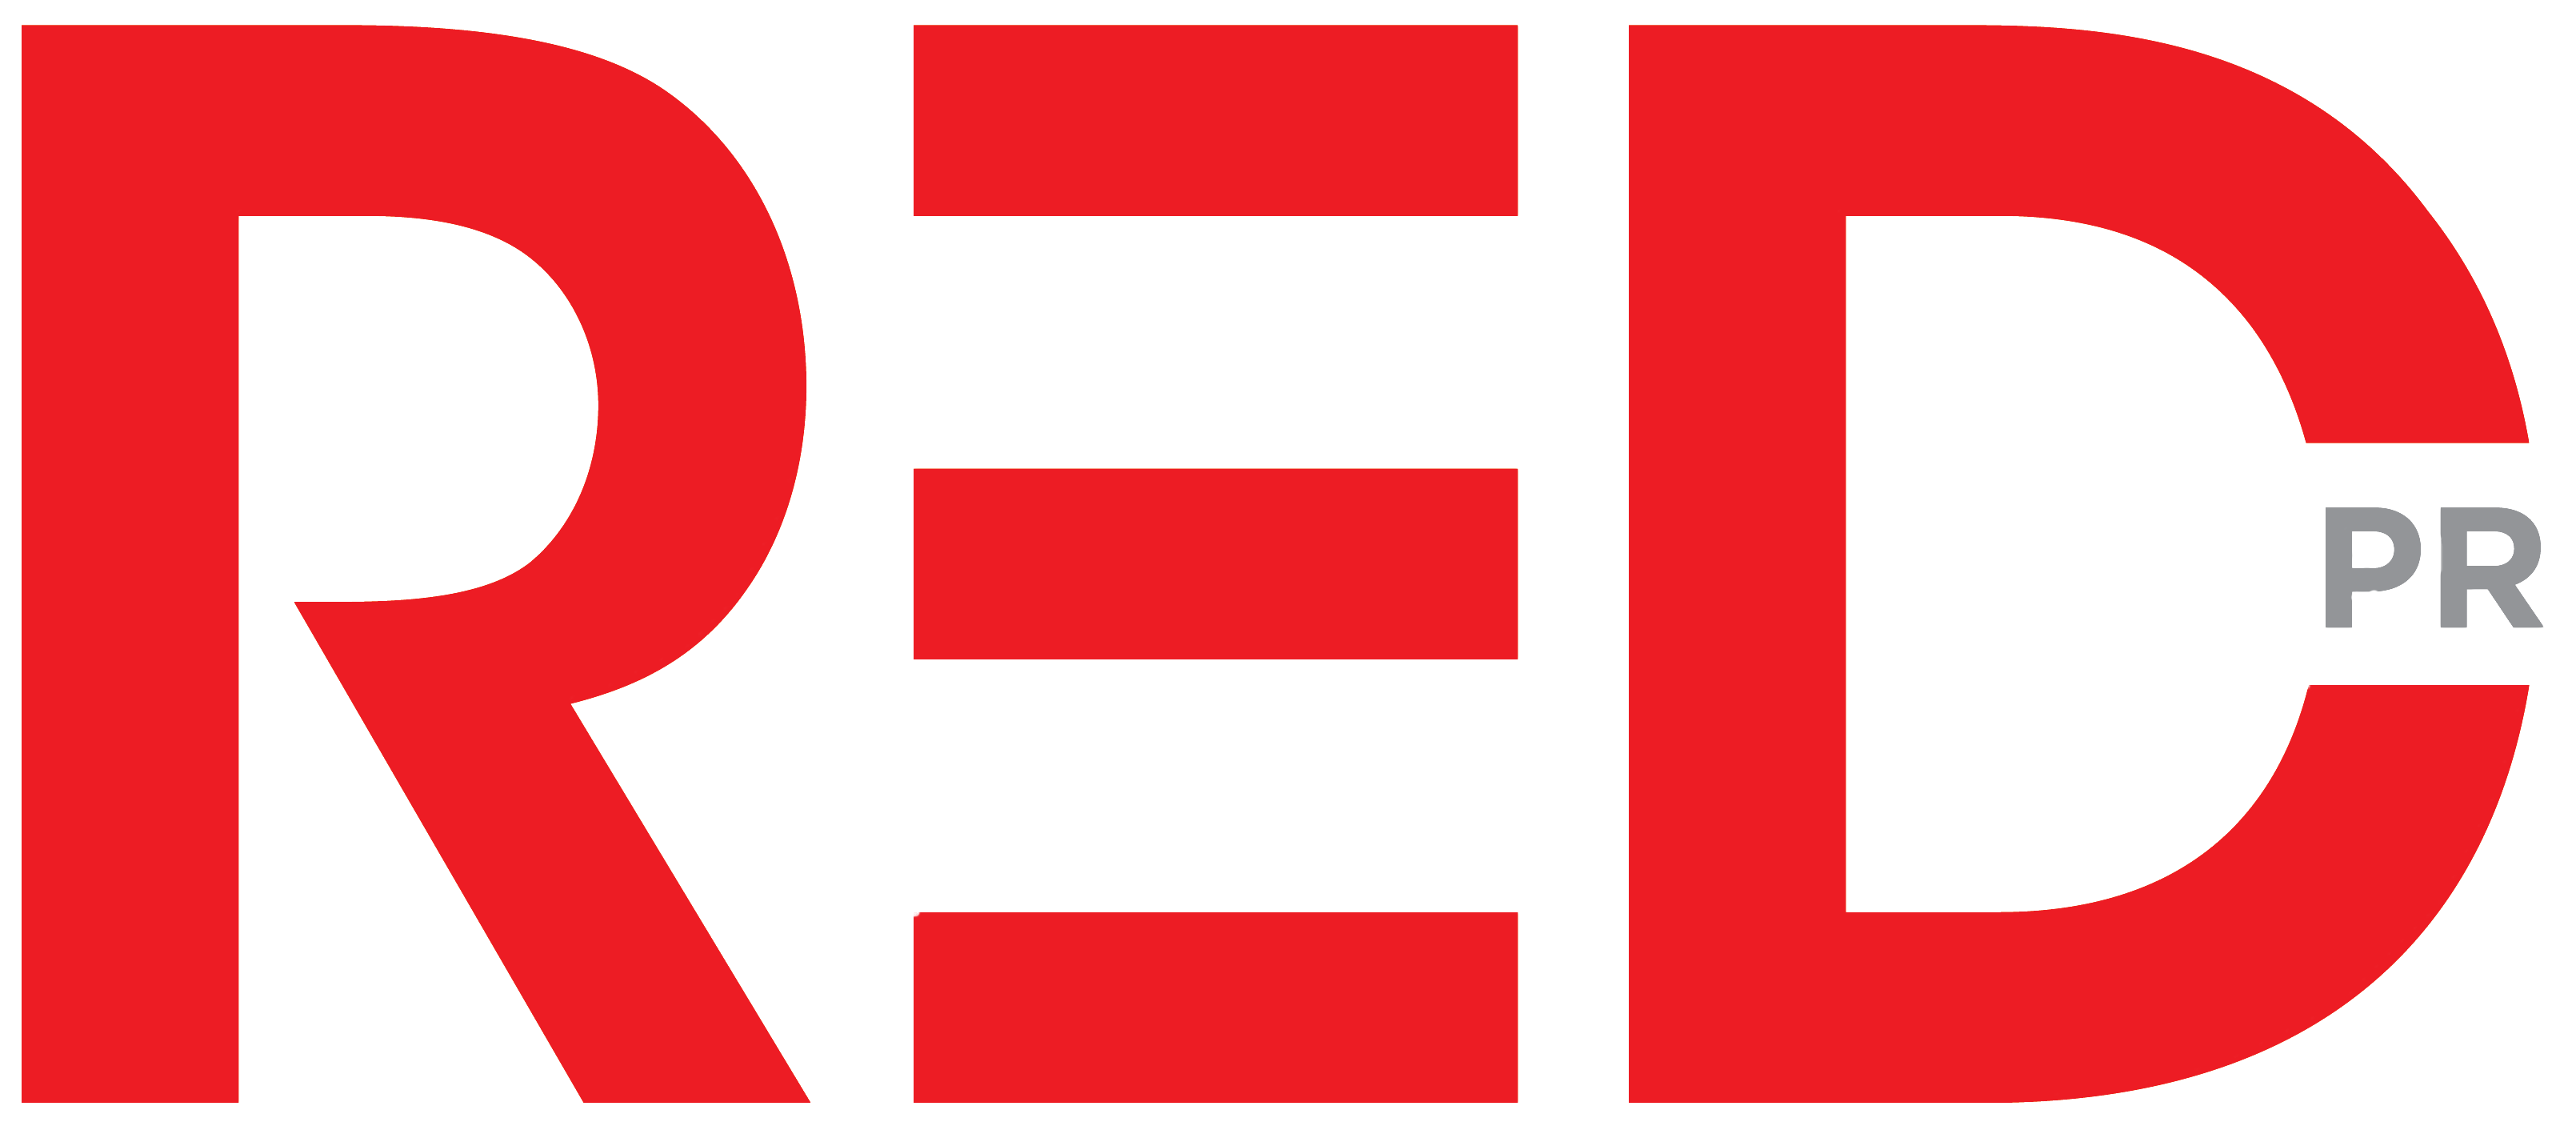 RedPR